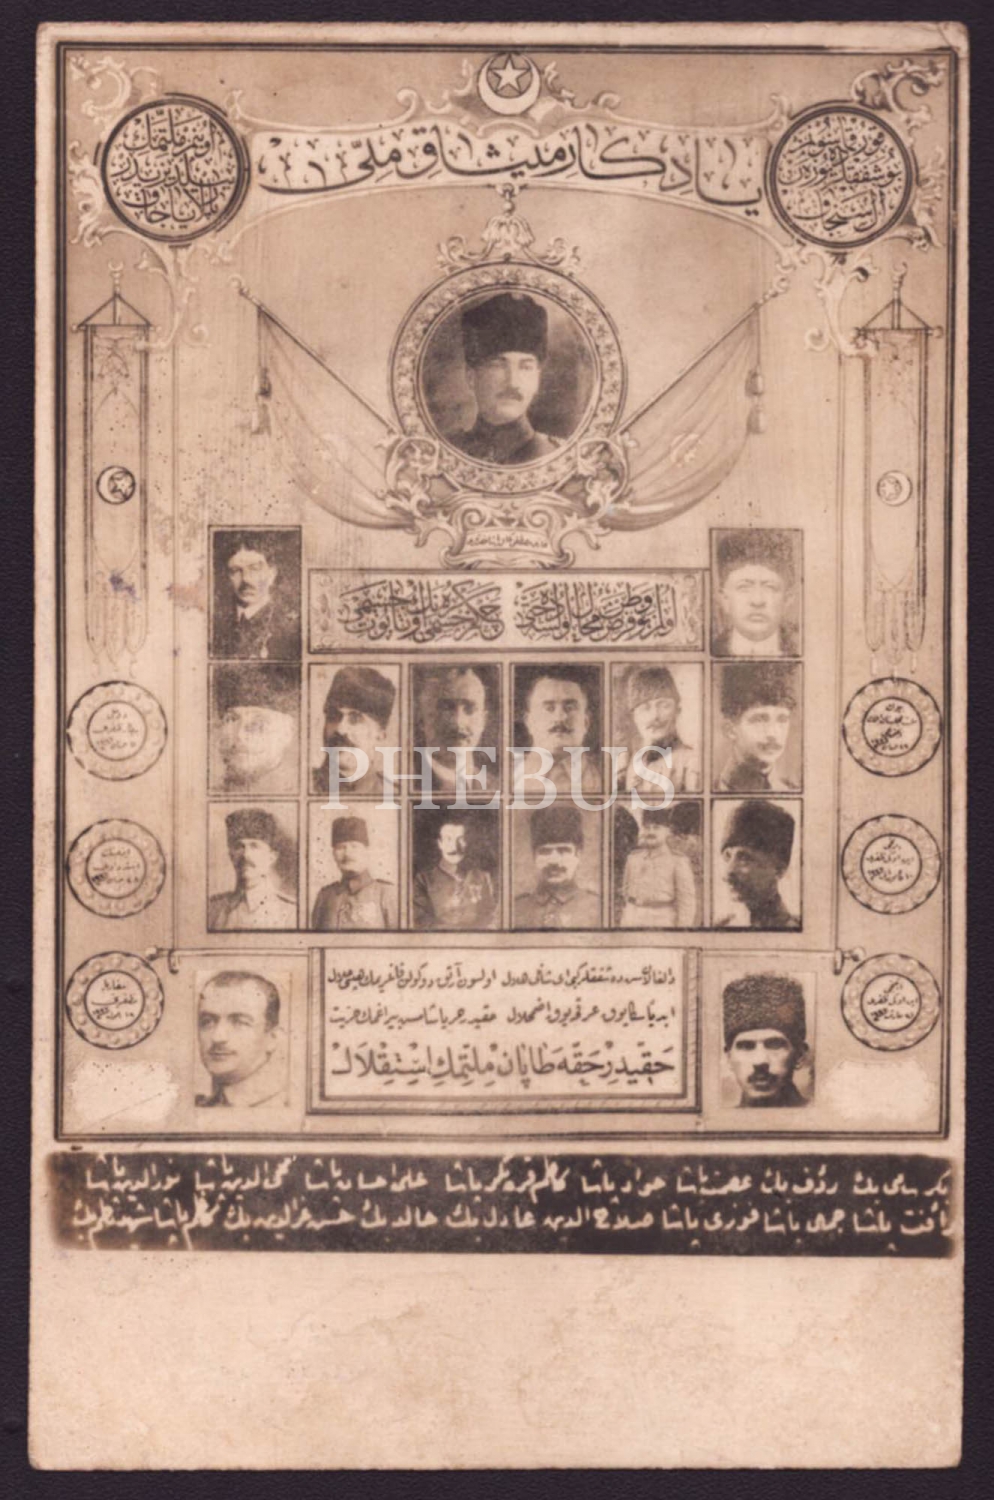 Başta Gazi Mustafa Kemal (Atatürk) Paşa olmak üzere Kurtuluş Savaşı´nın kahraman kumandanlarının bir arada görüldüğü 